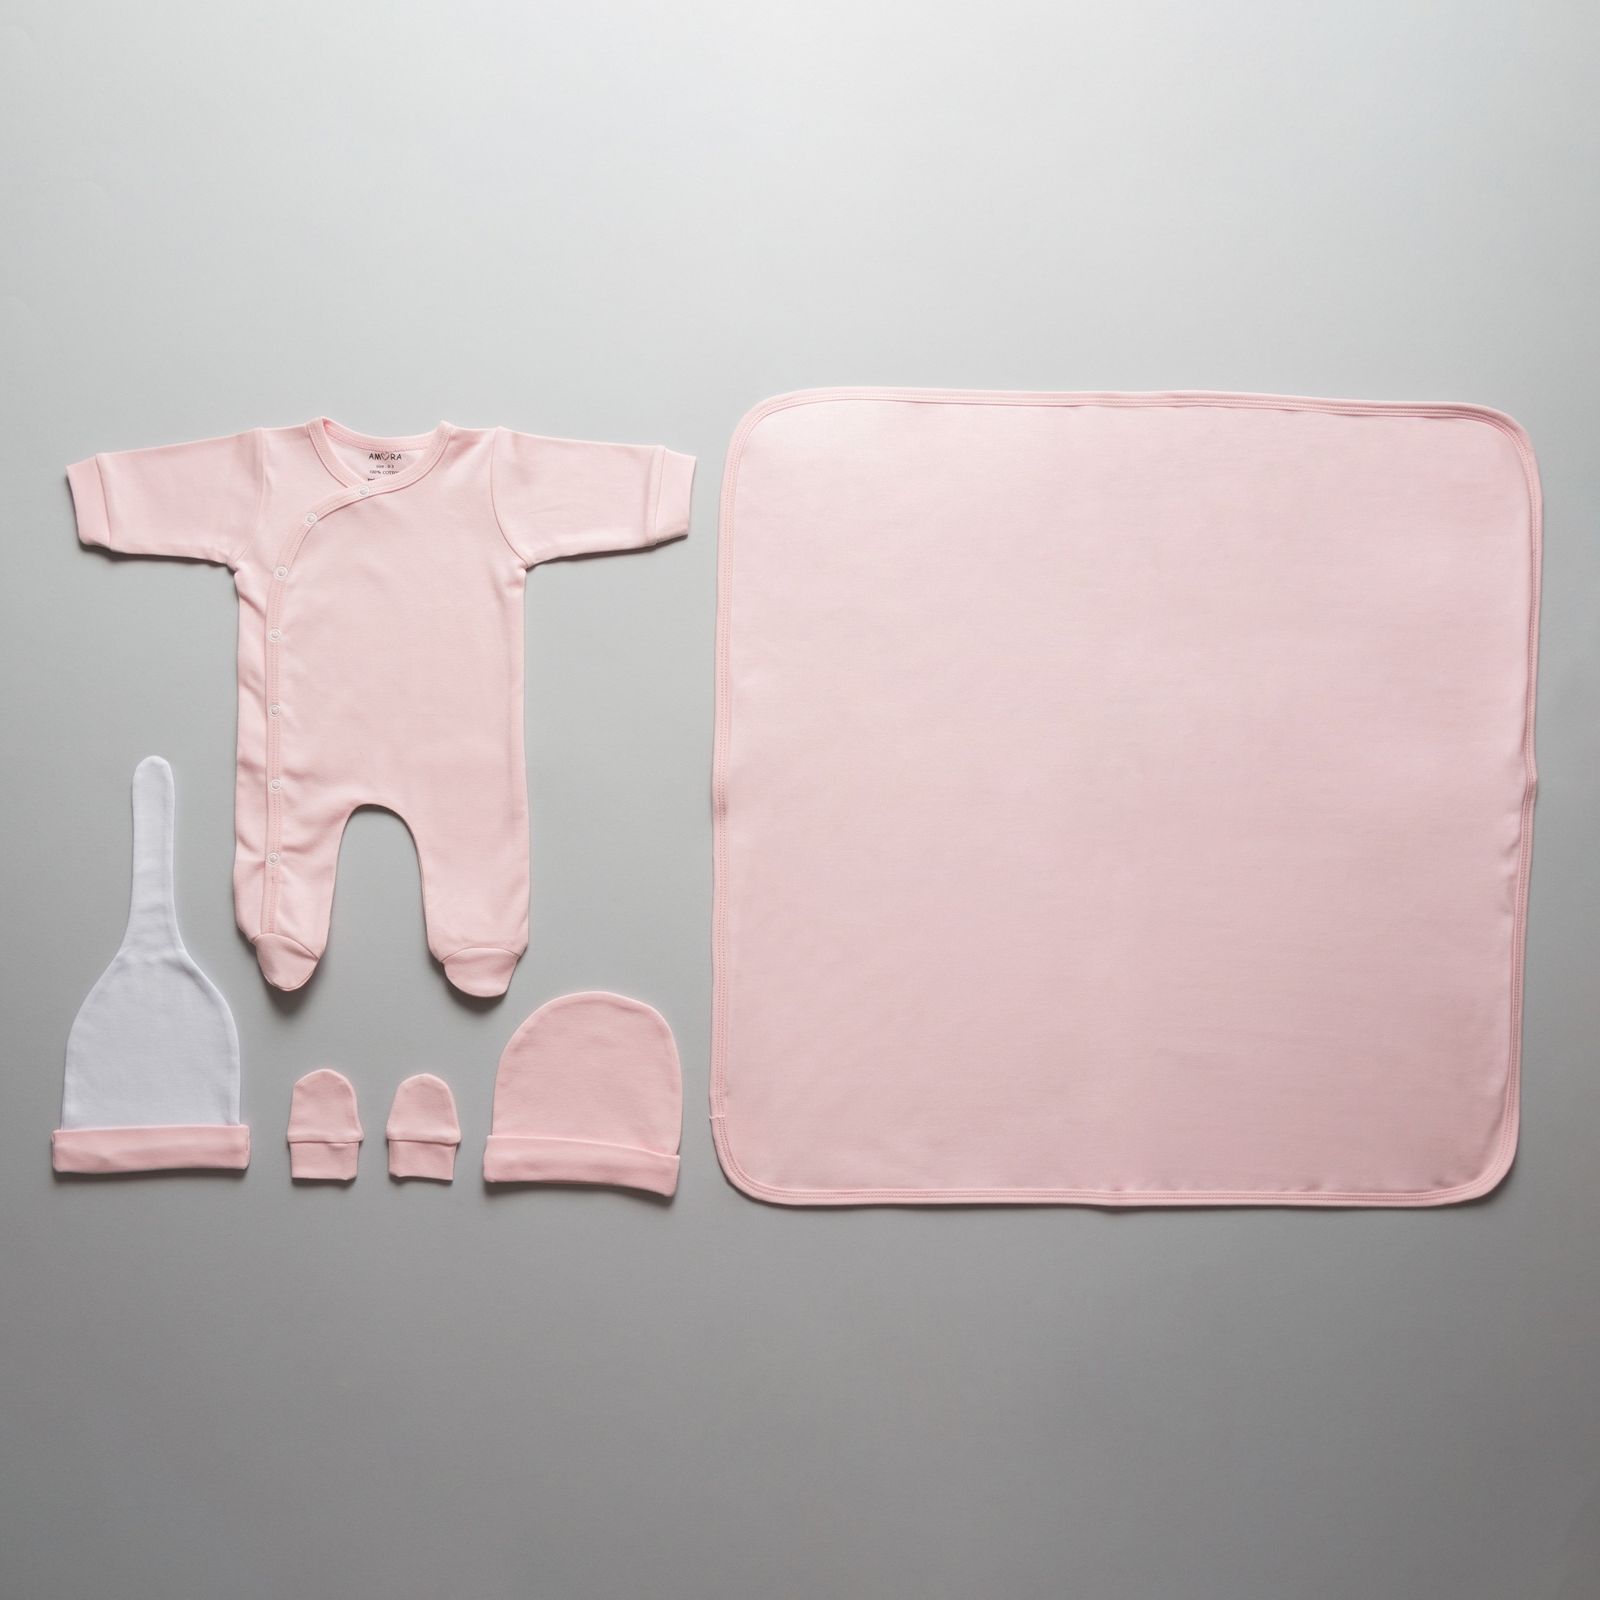 ست 19 تکه لباس نوزادی آمورا مدل sensitive رنگ صورتی -  - 15